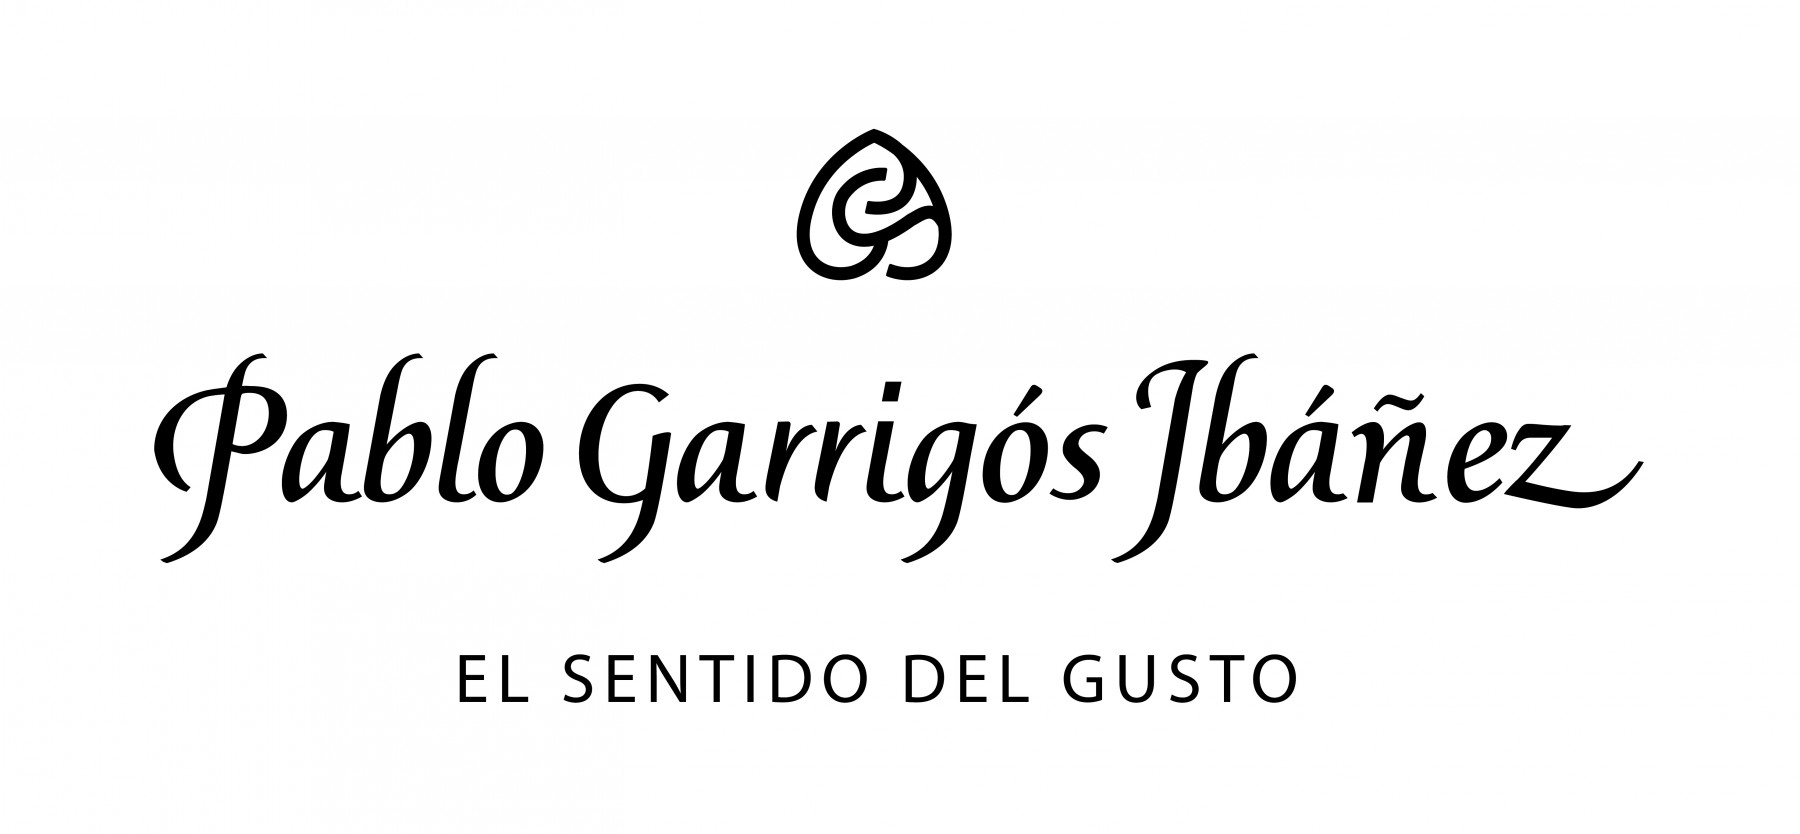 Hong Kong Flower Shop GGB brands Pablo Garrigos Ibanez